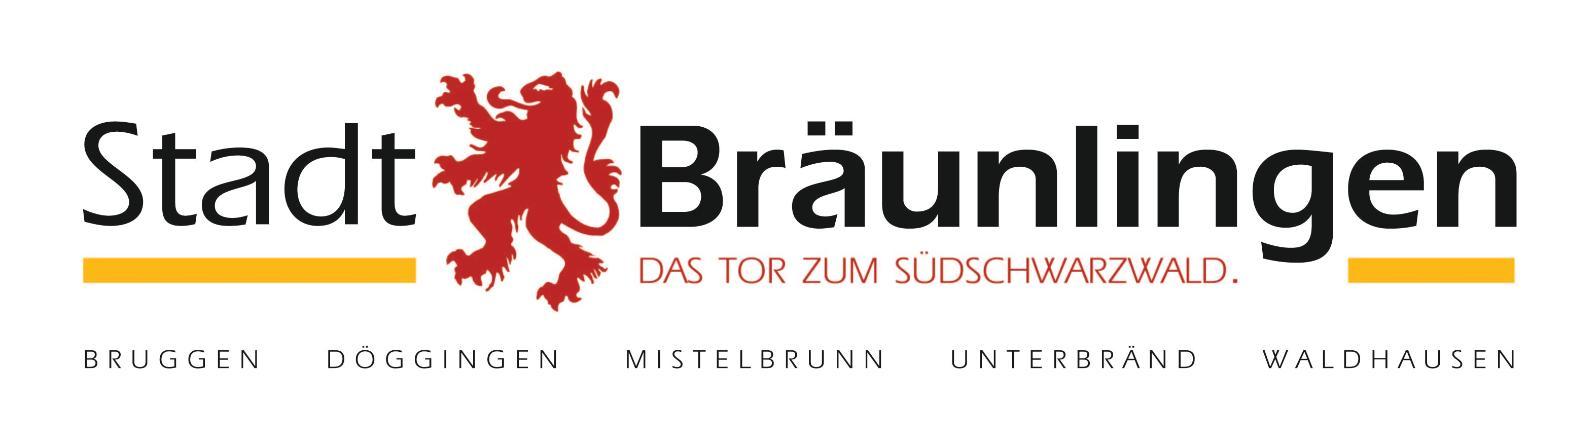 Logo Bräunlingen